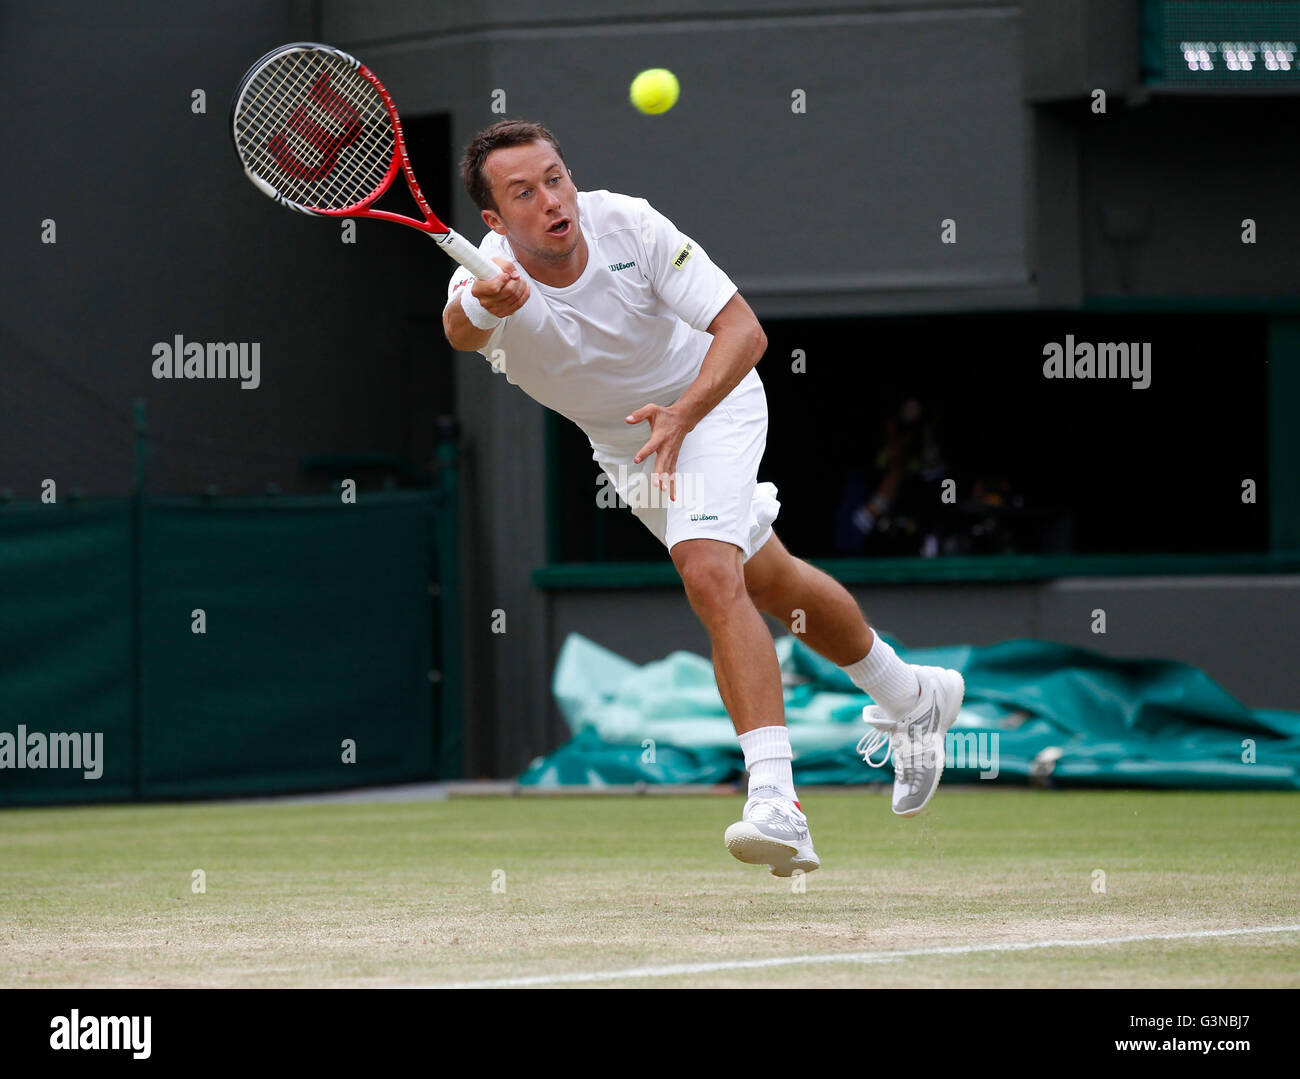 De Commentaires, GER, de Wimbledon 2012, profils Têtes de tournoi du Grand Chelem de tennis de l'ITF, Londres, Angleterre Banque D'Images